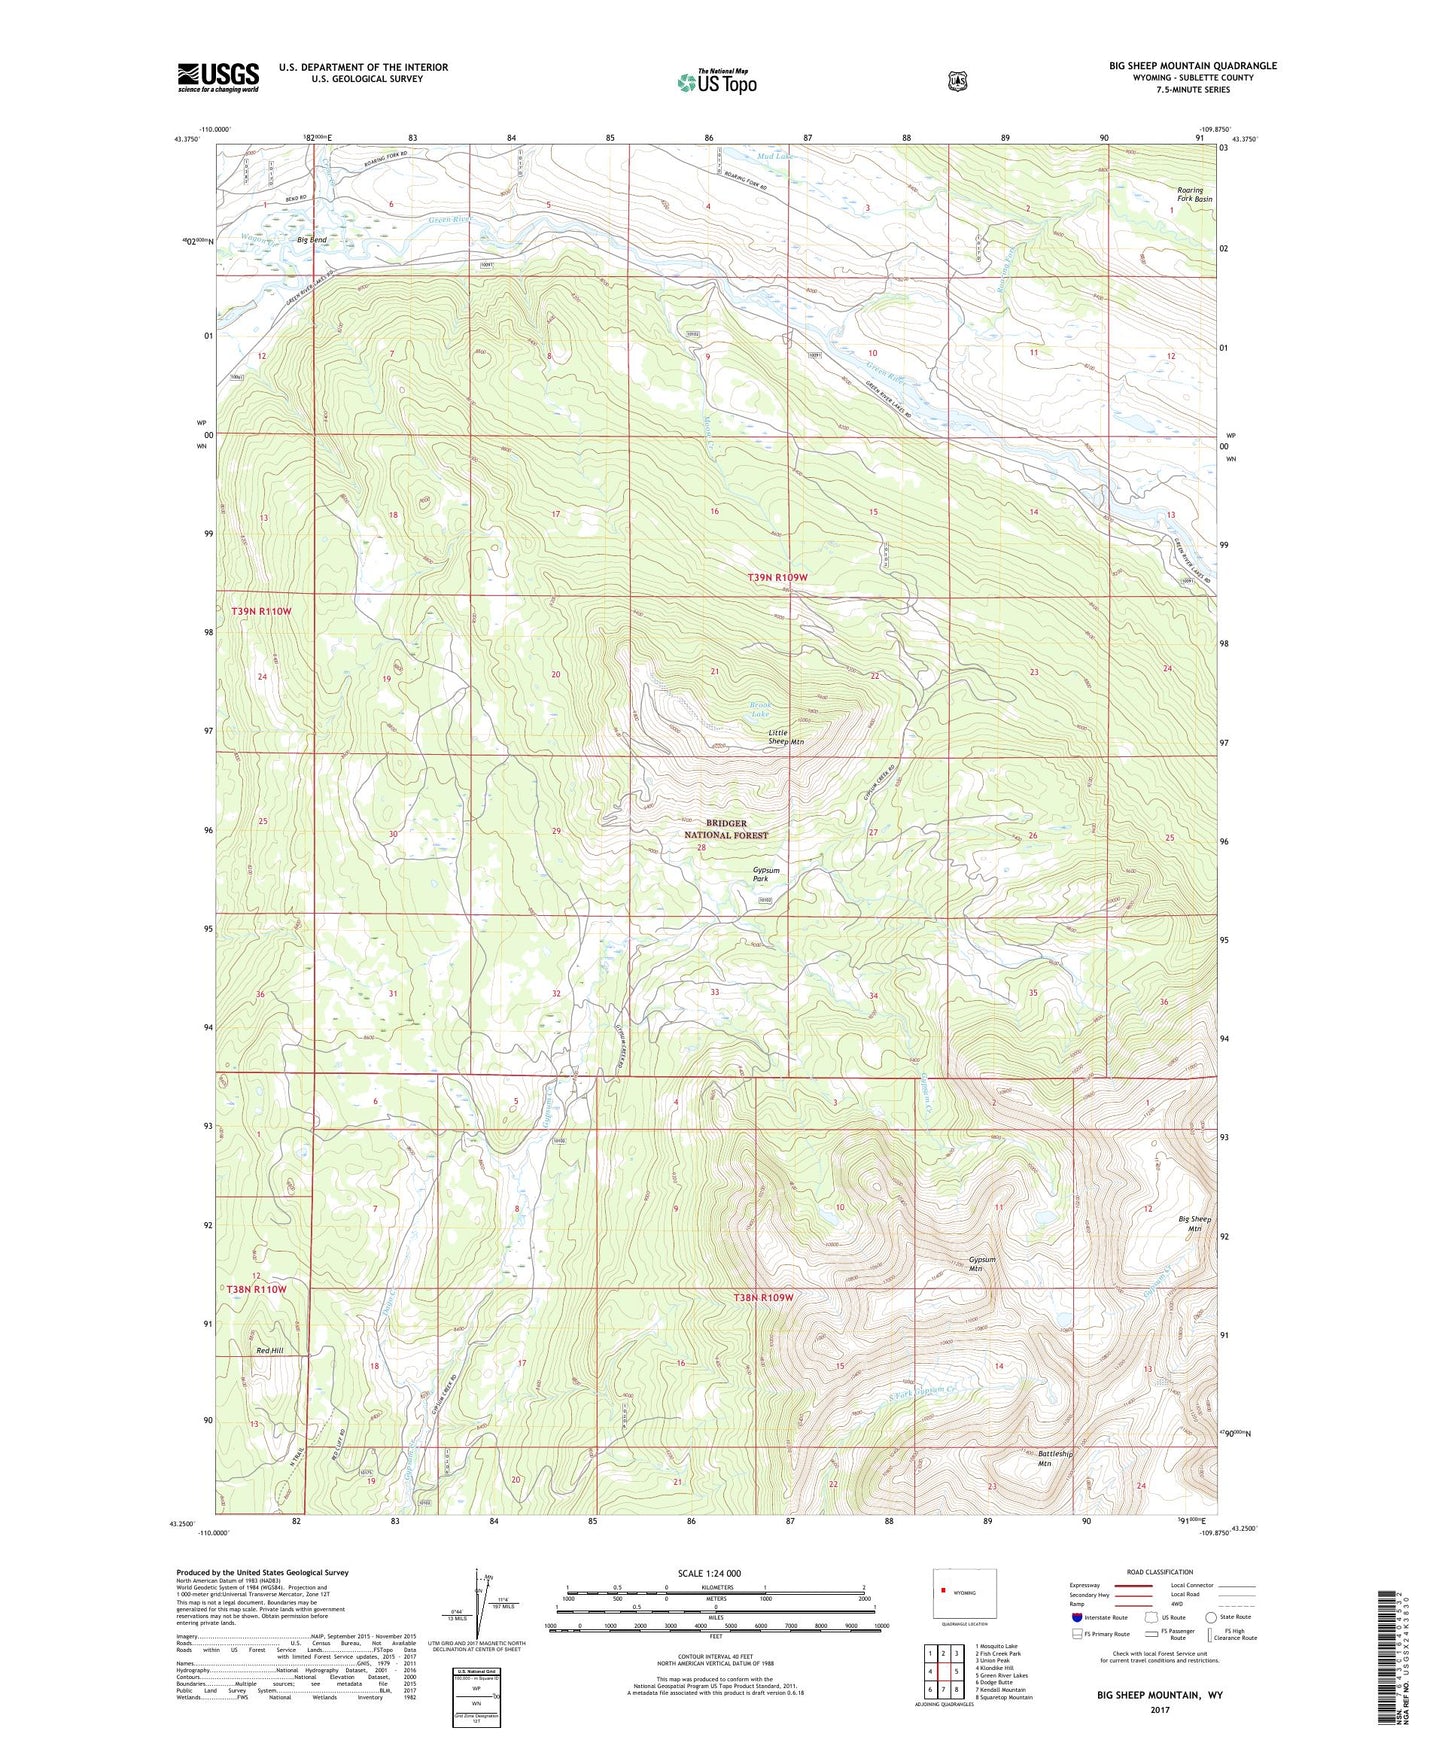 Big Sheep Mountain Wyoming US Topo Map Image